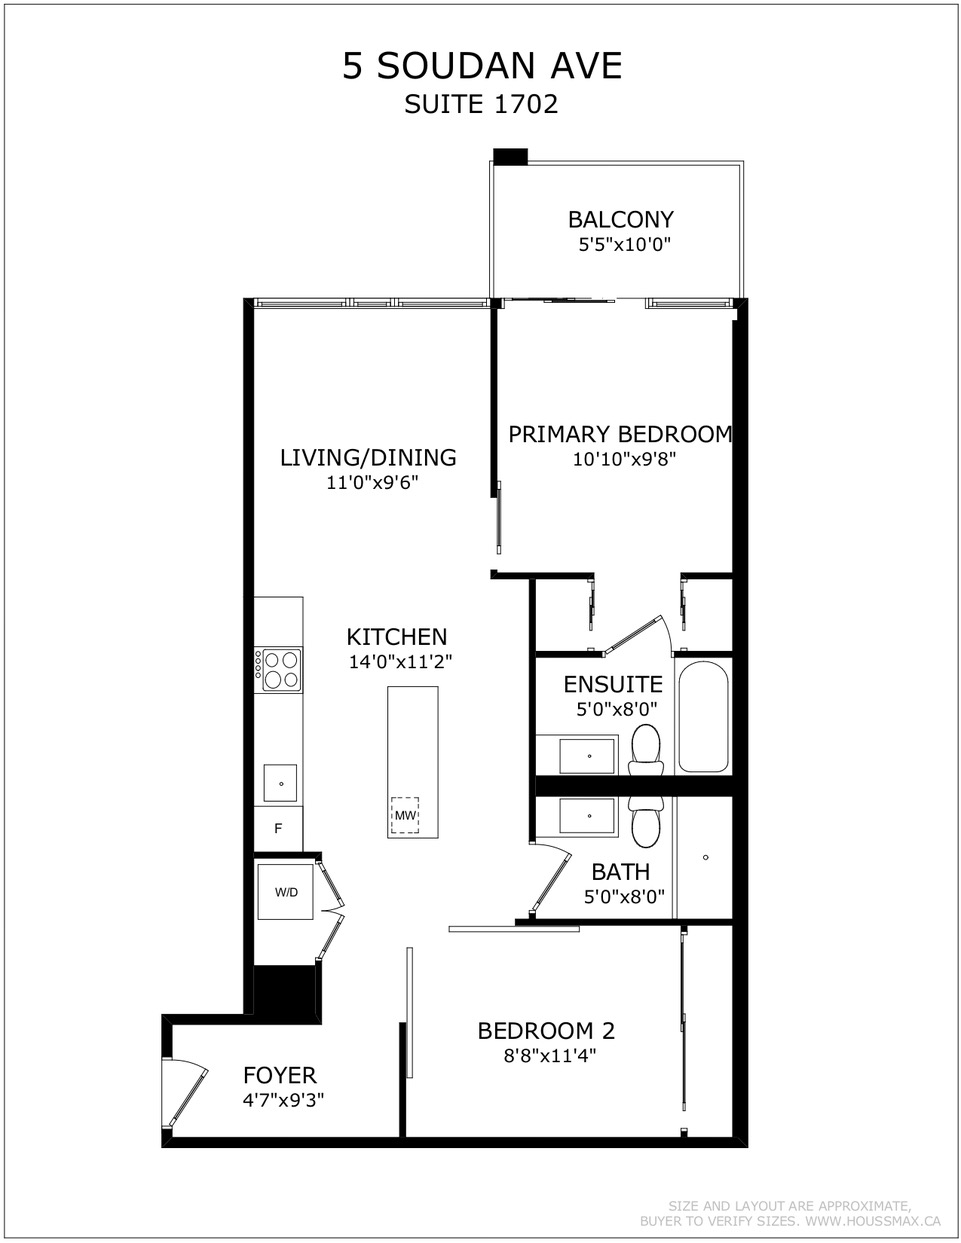 Floor plans for 5 Soudan Ave Unit 1702.